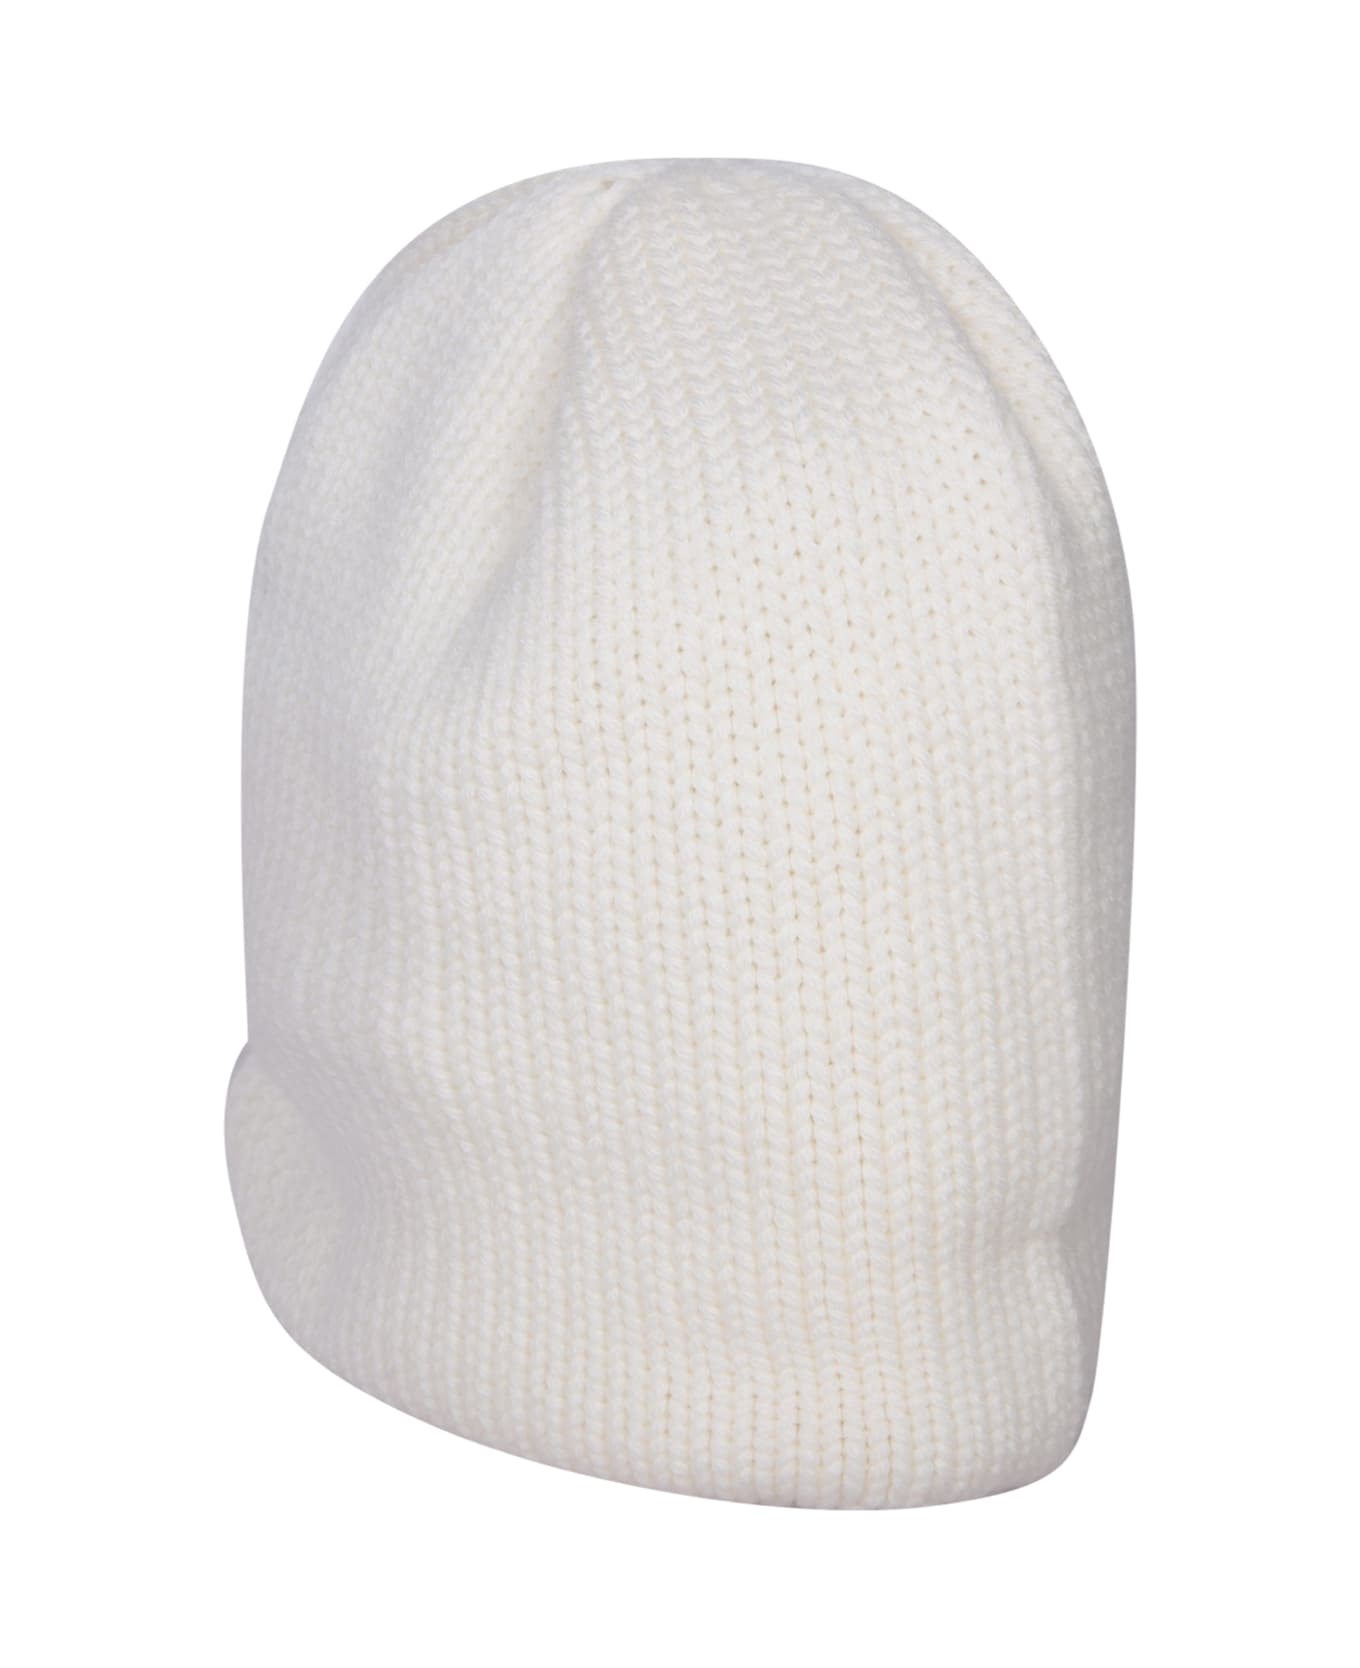 Moncler Grenoble Logo Patch Beanie - White 帽子